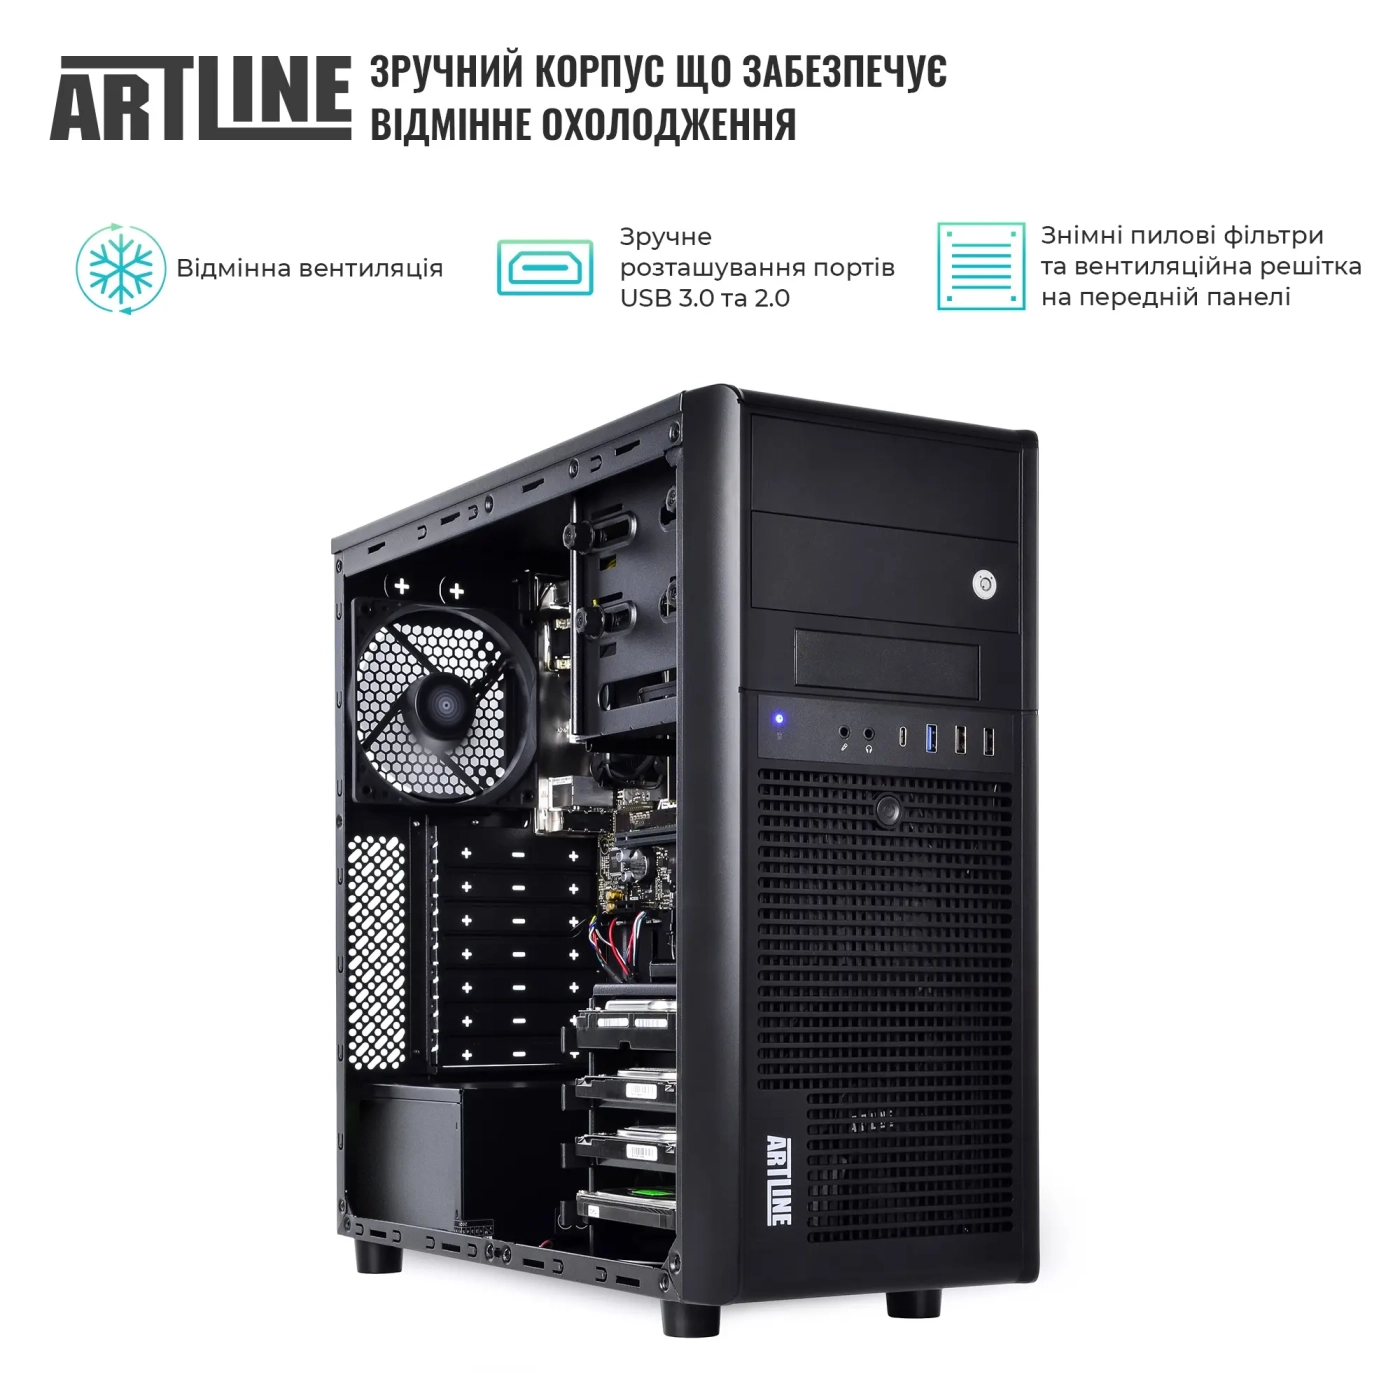 Купить Сервер ARTLINE Business T36 (T36v37) - фото 3